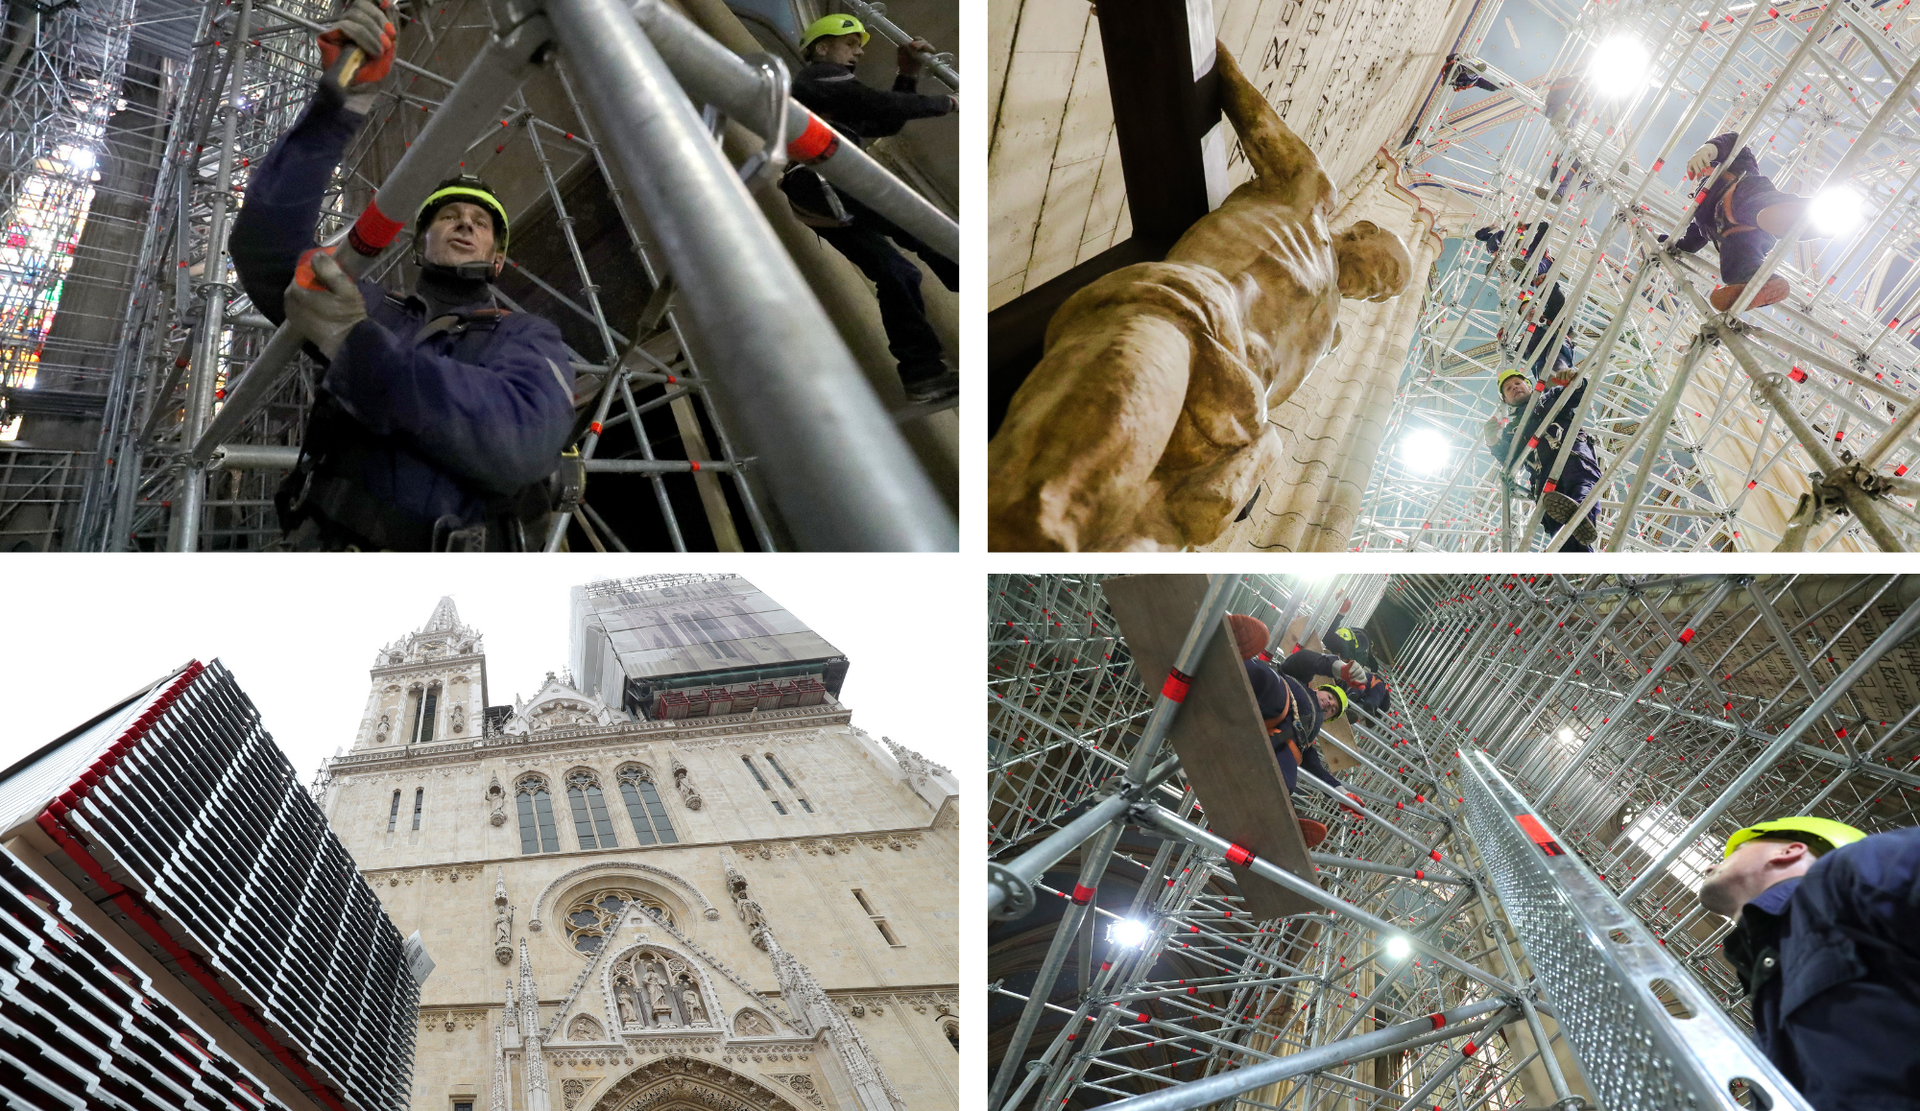 Katedrala godinu dana nakon potresa: Radnici umjesto vjernika, skele umjesto kipova